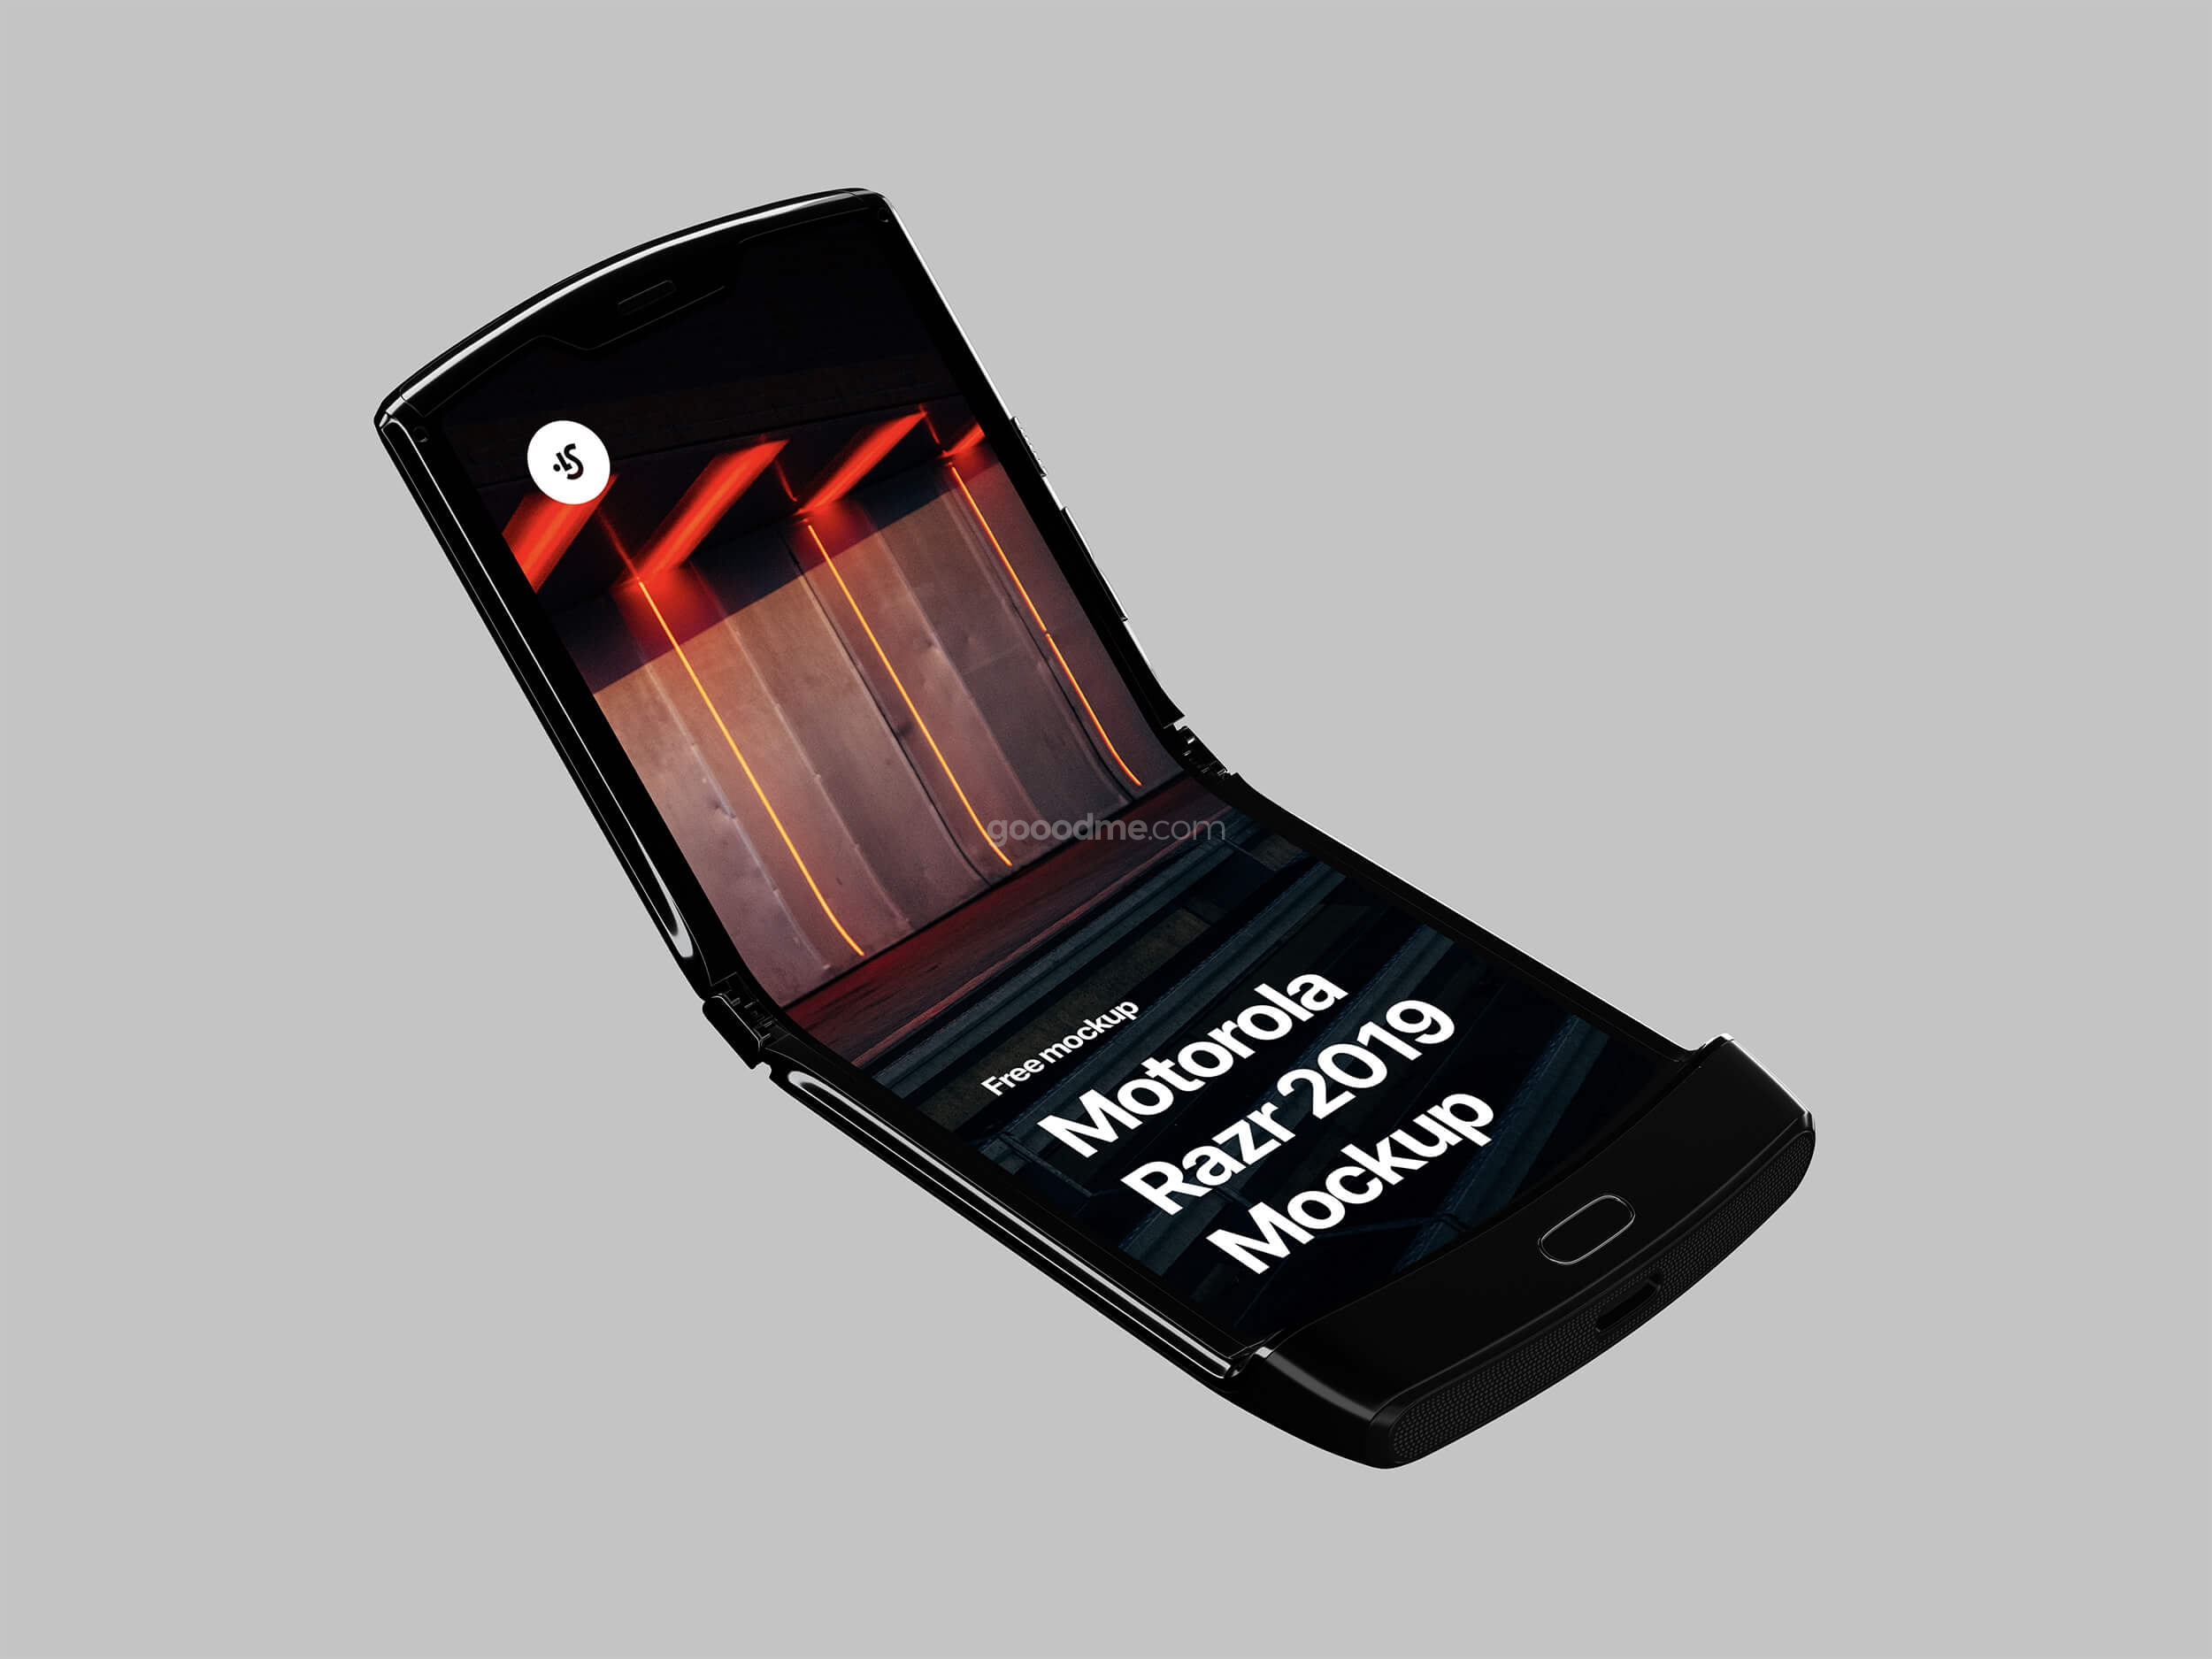 348 可商用摩托罗拉razr手机折叠屏幕展示UI设计样机素材 Motorola Razr 2019 Mockup